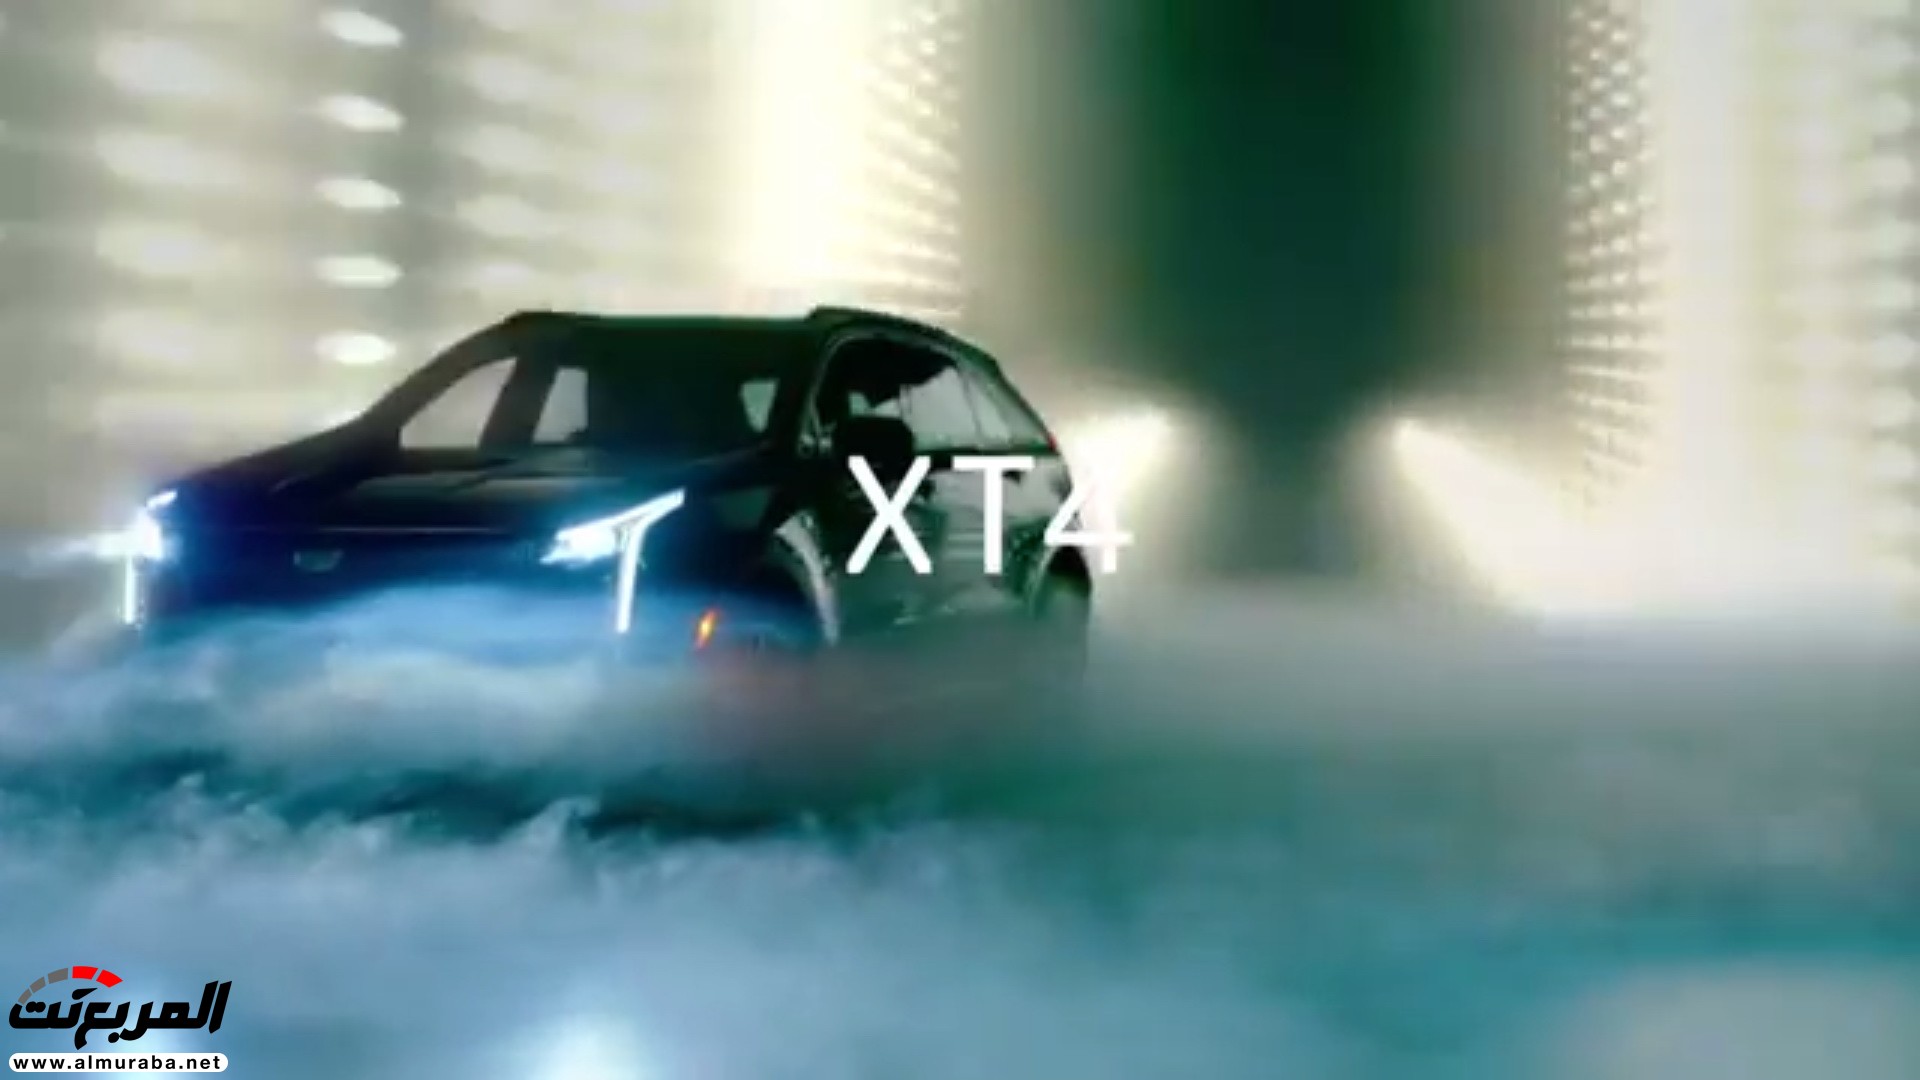 كاديلاك XT4 موديل 2019 تظهر في فيديو وصور تشويقية 14